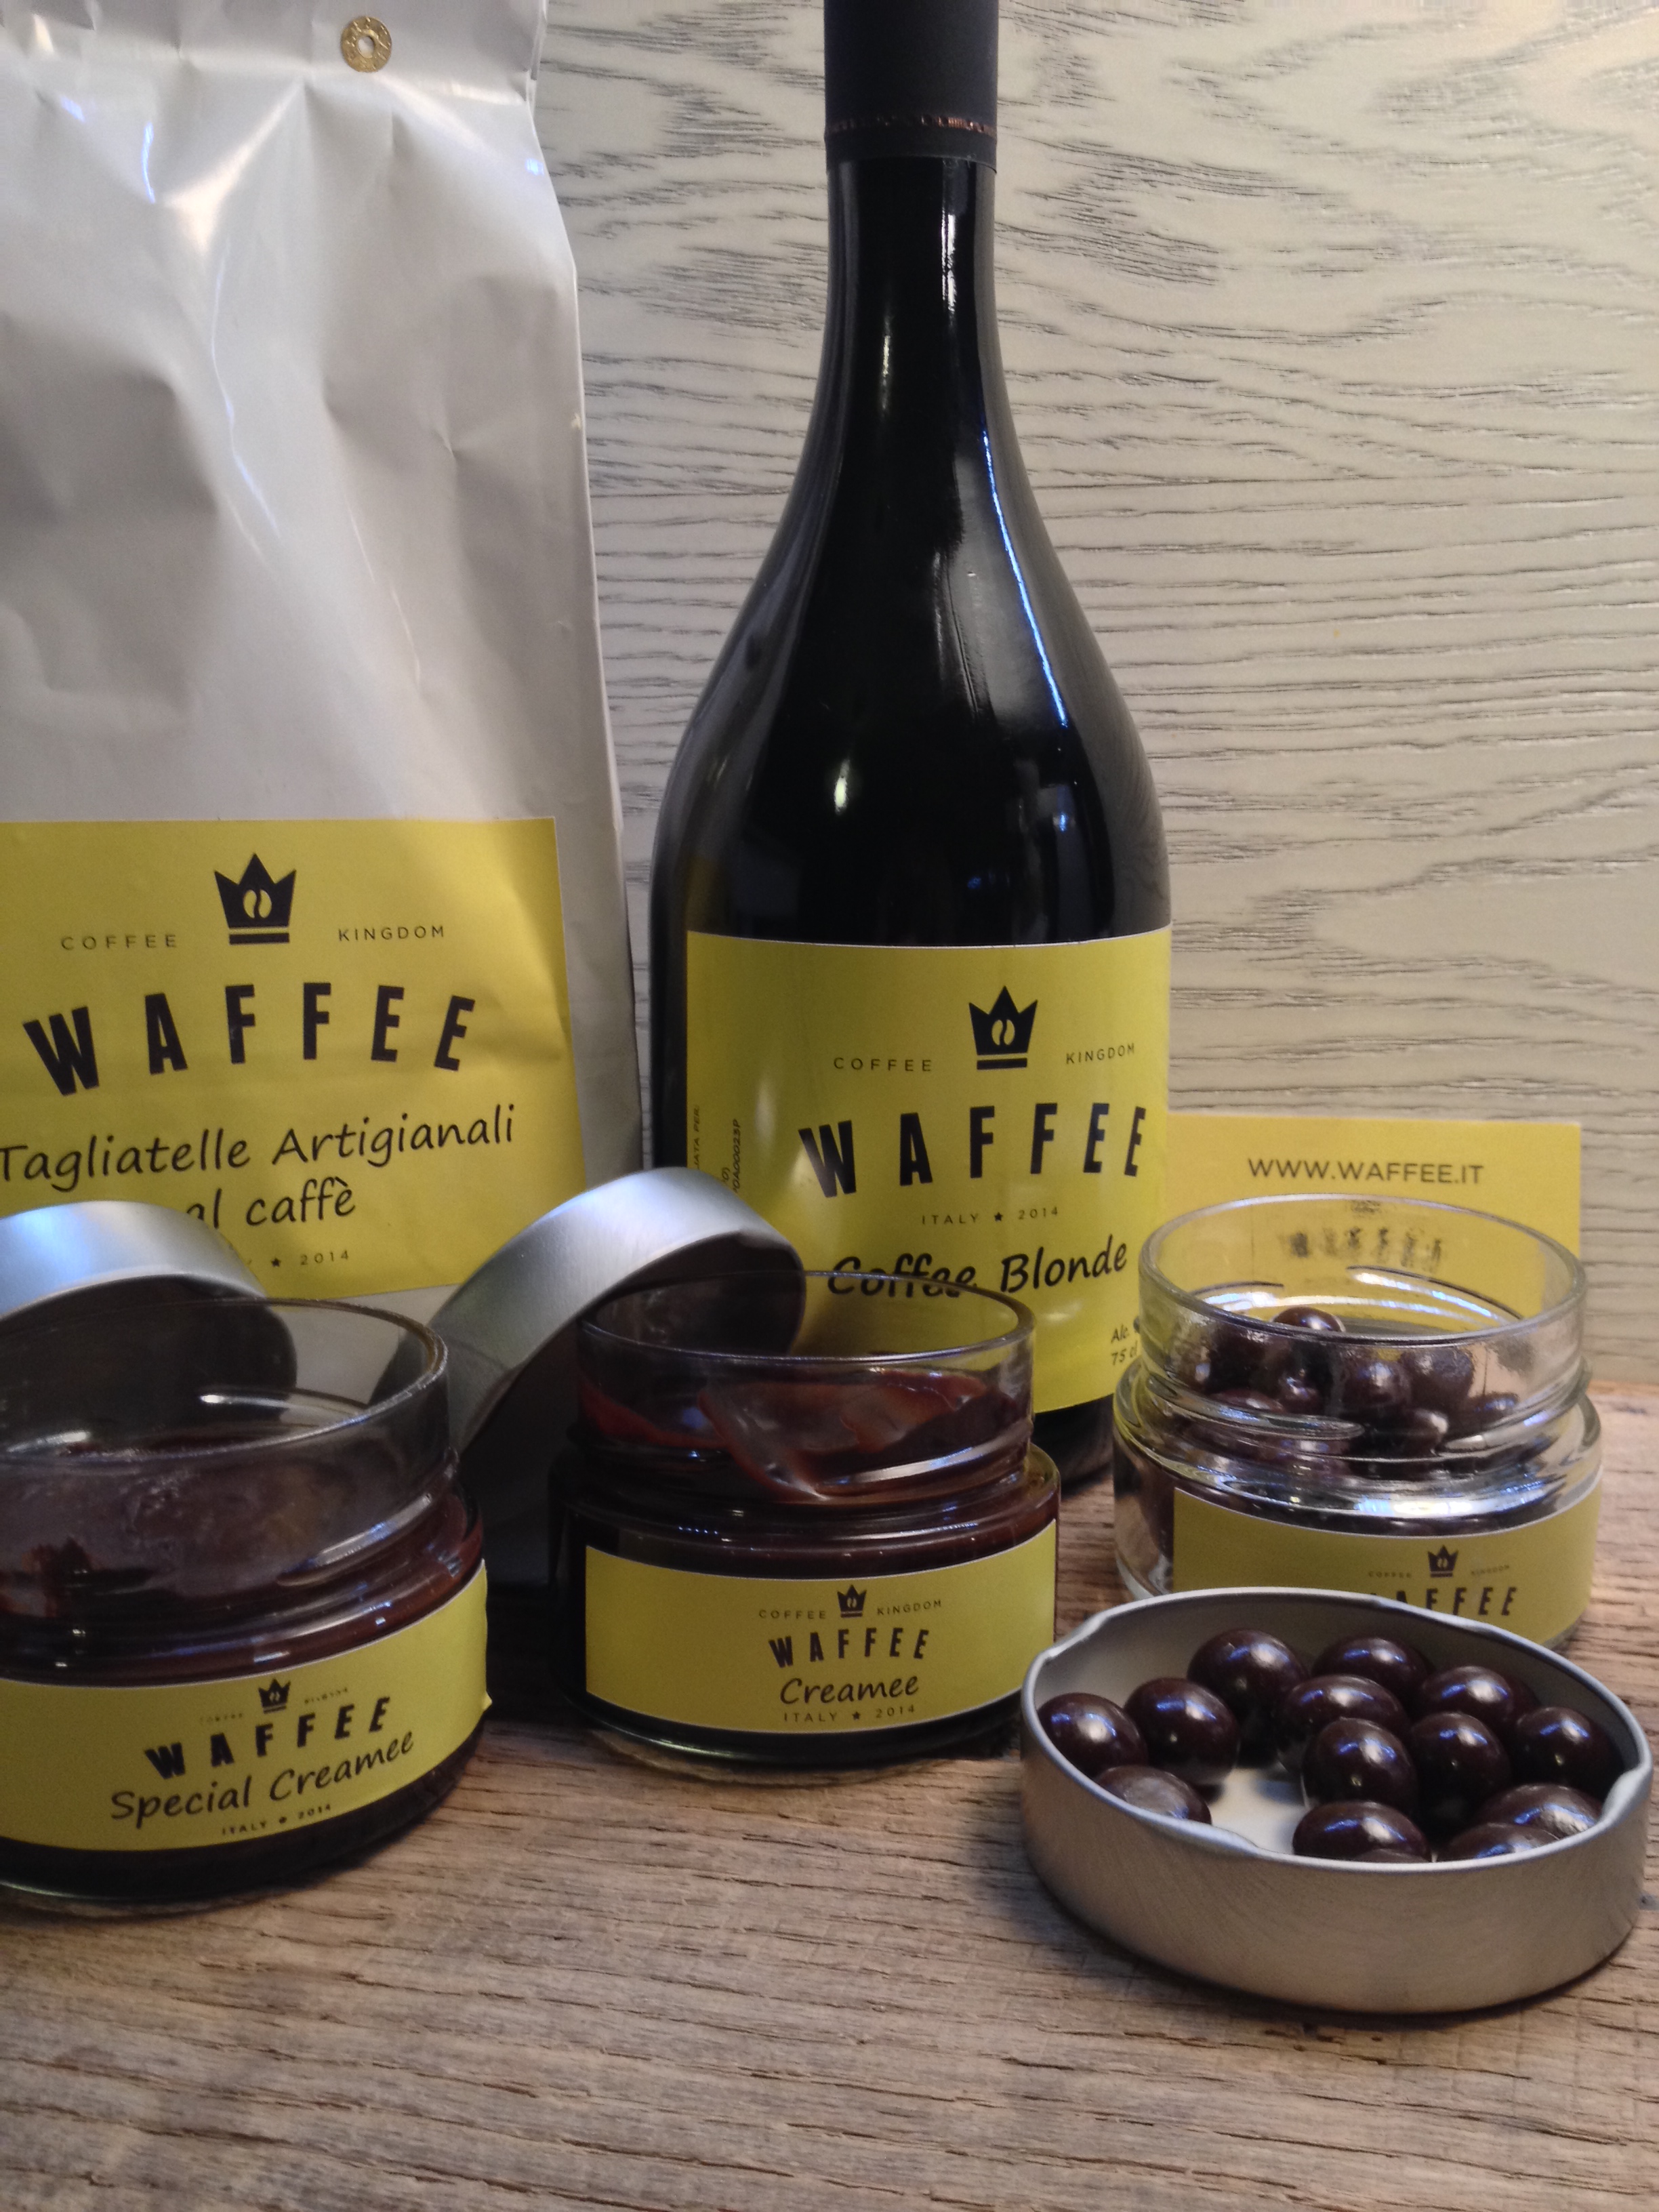 Nuova collaborazione Waffee-Coffee Kingdom